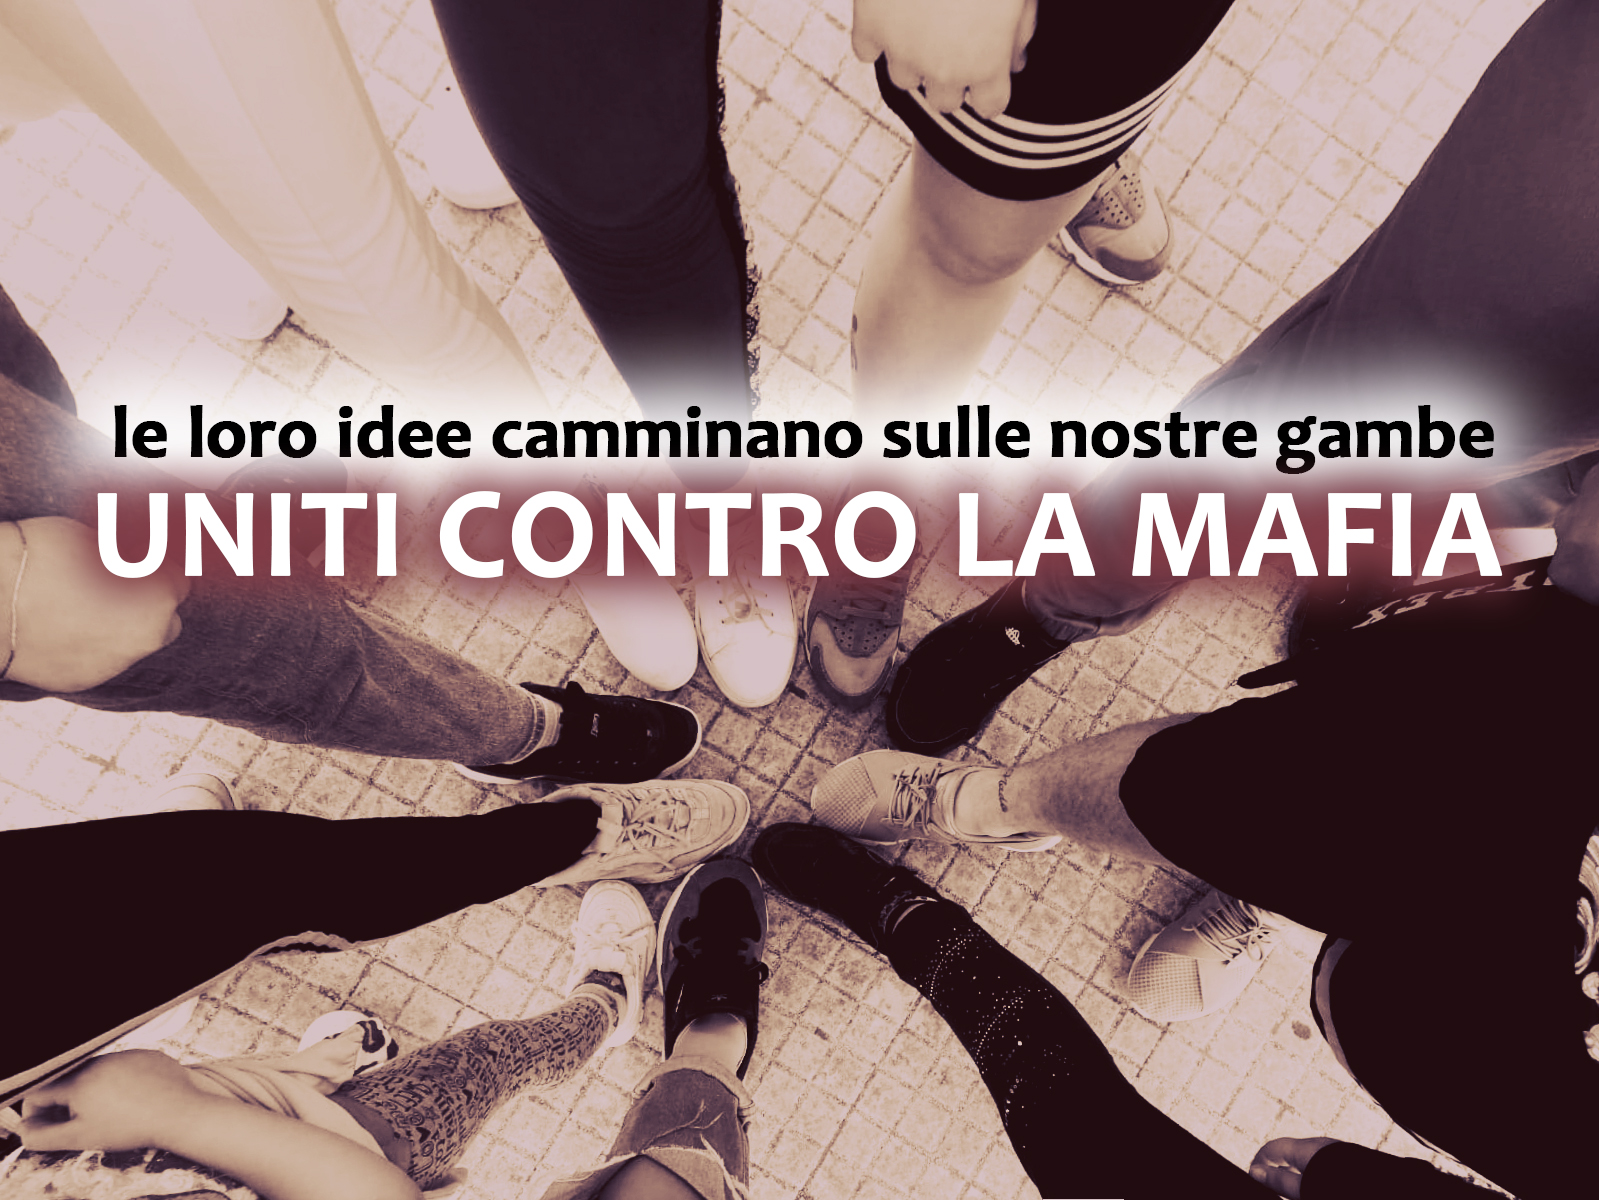 La campagna pubblicitaria per la legalità degli alunni del Liceo Artistico “A. Musco” di Catania